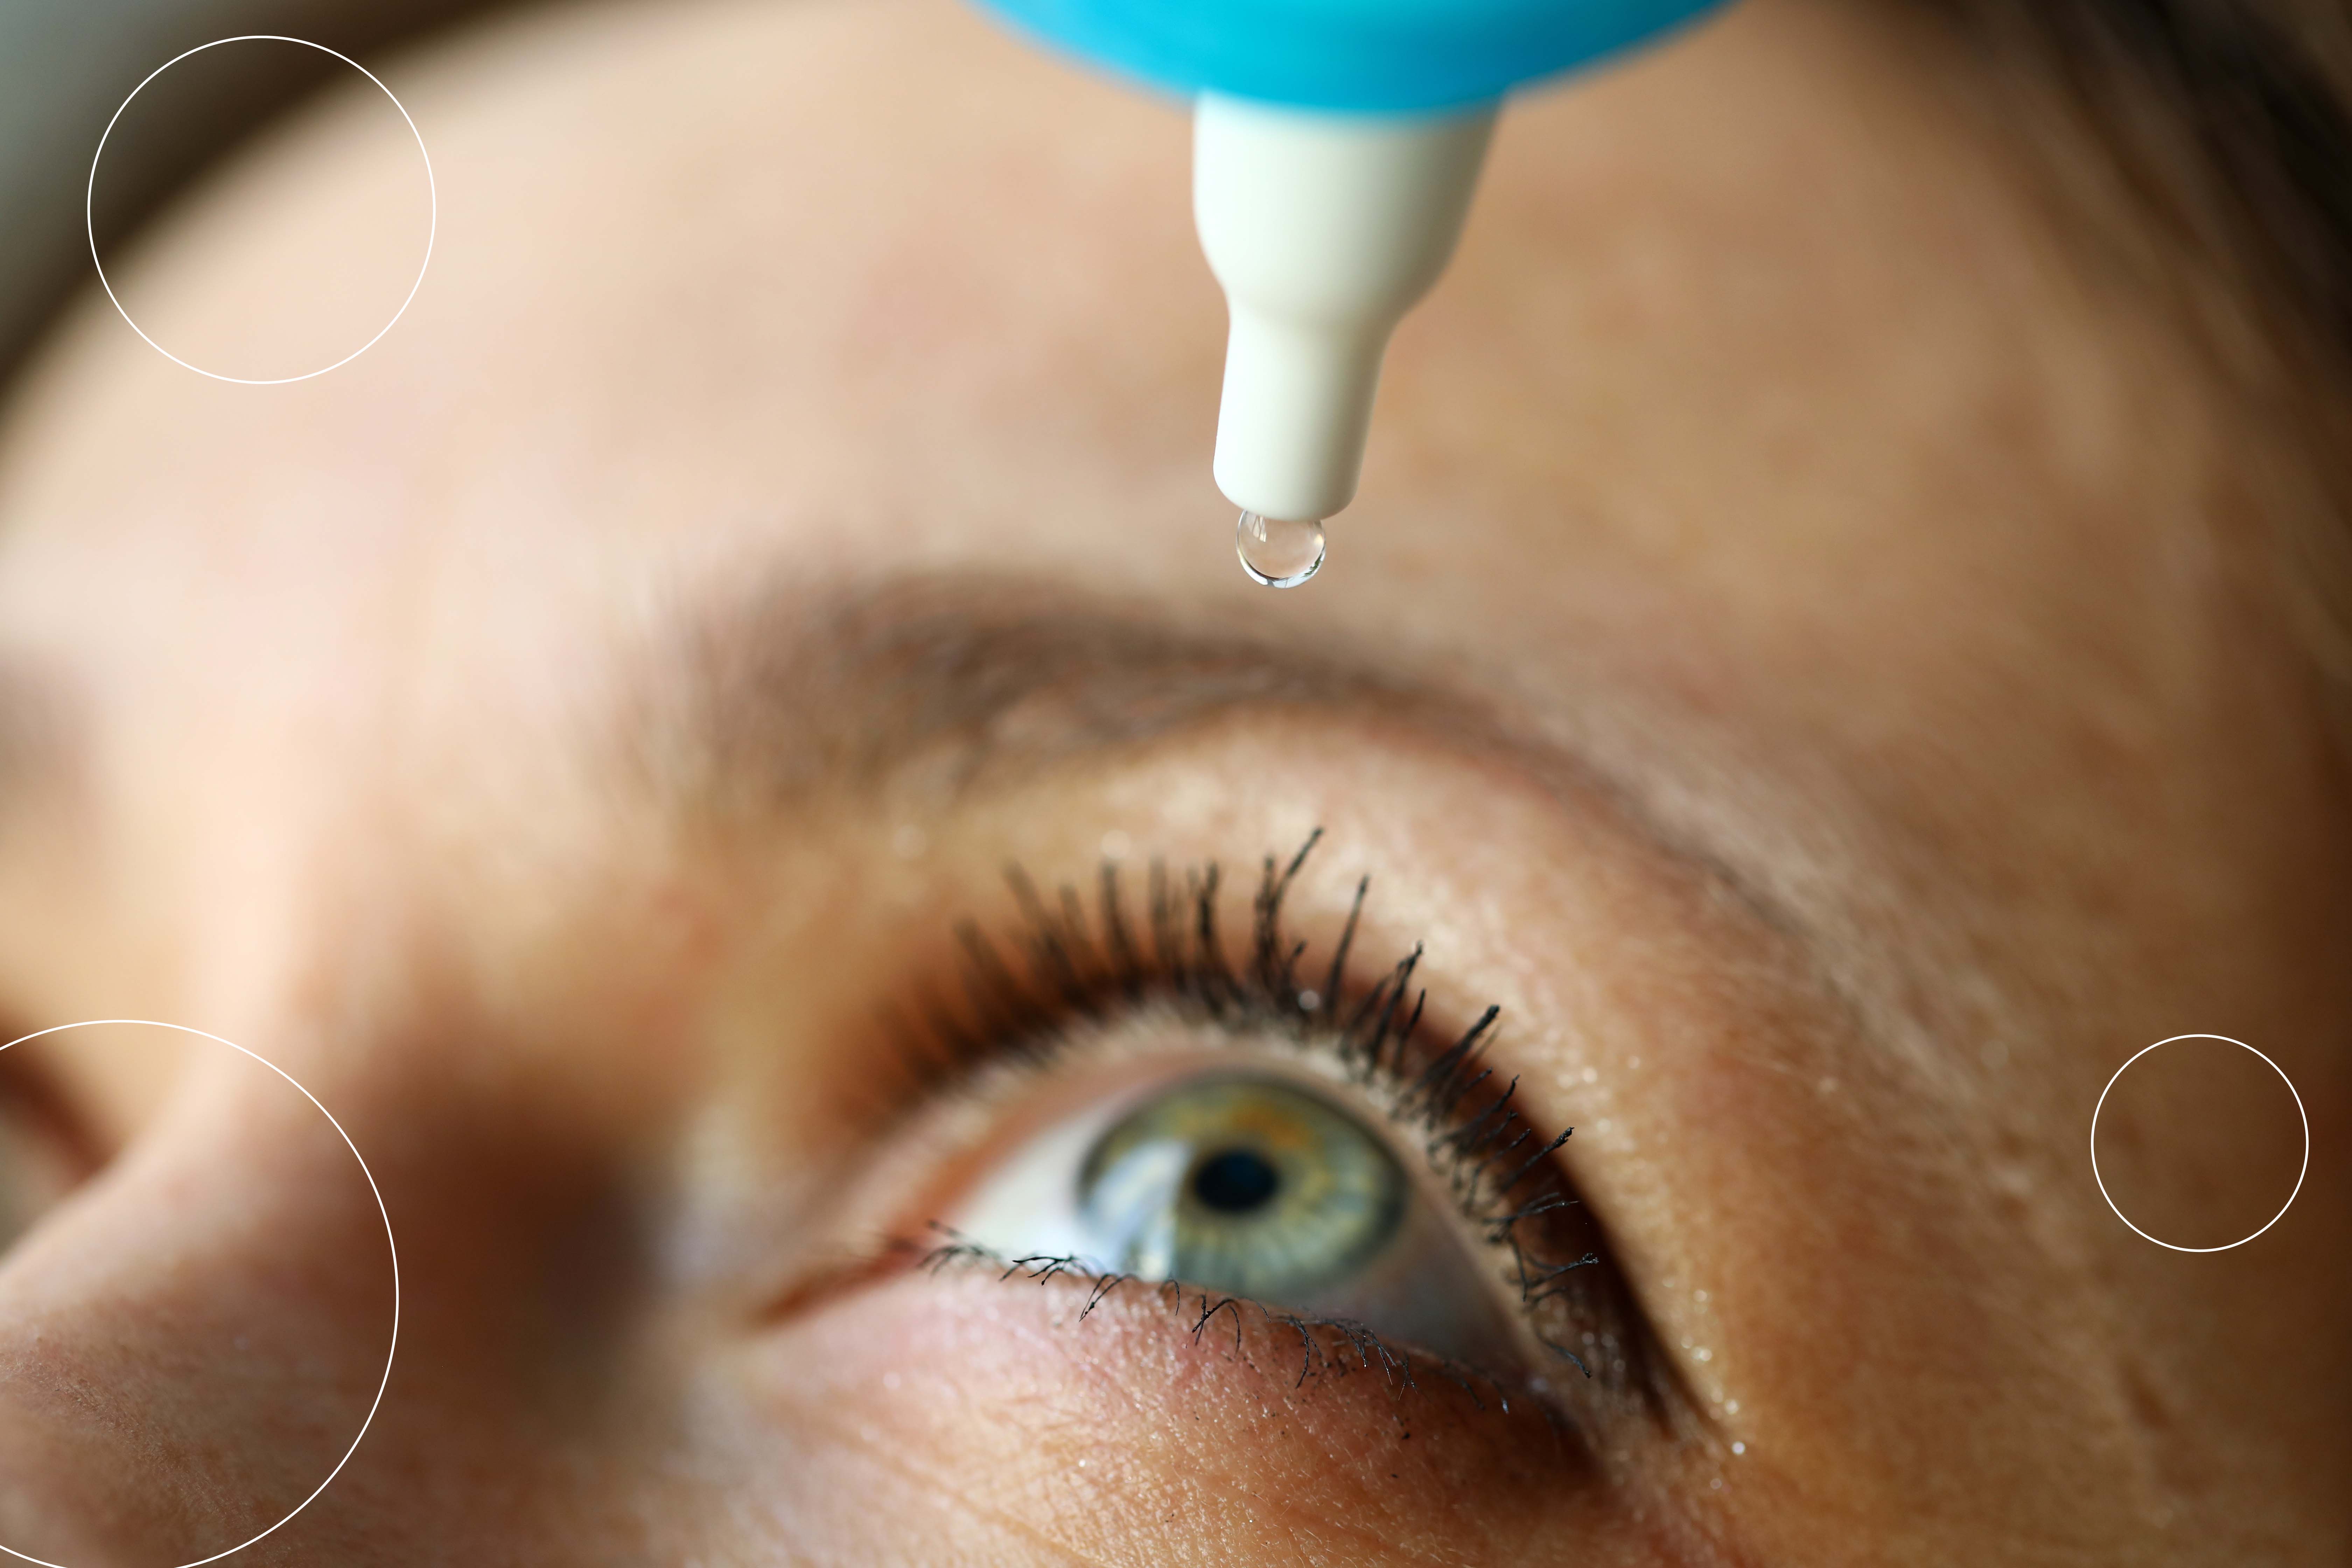 Imagen de una mujer joven que se coloca gotas de lágrimas artificiales para reducir sus síntomas de ojo seco